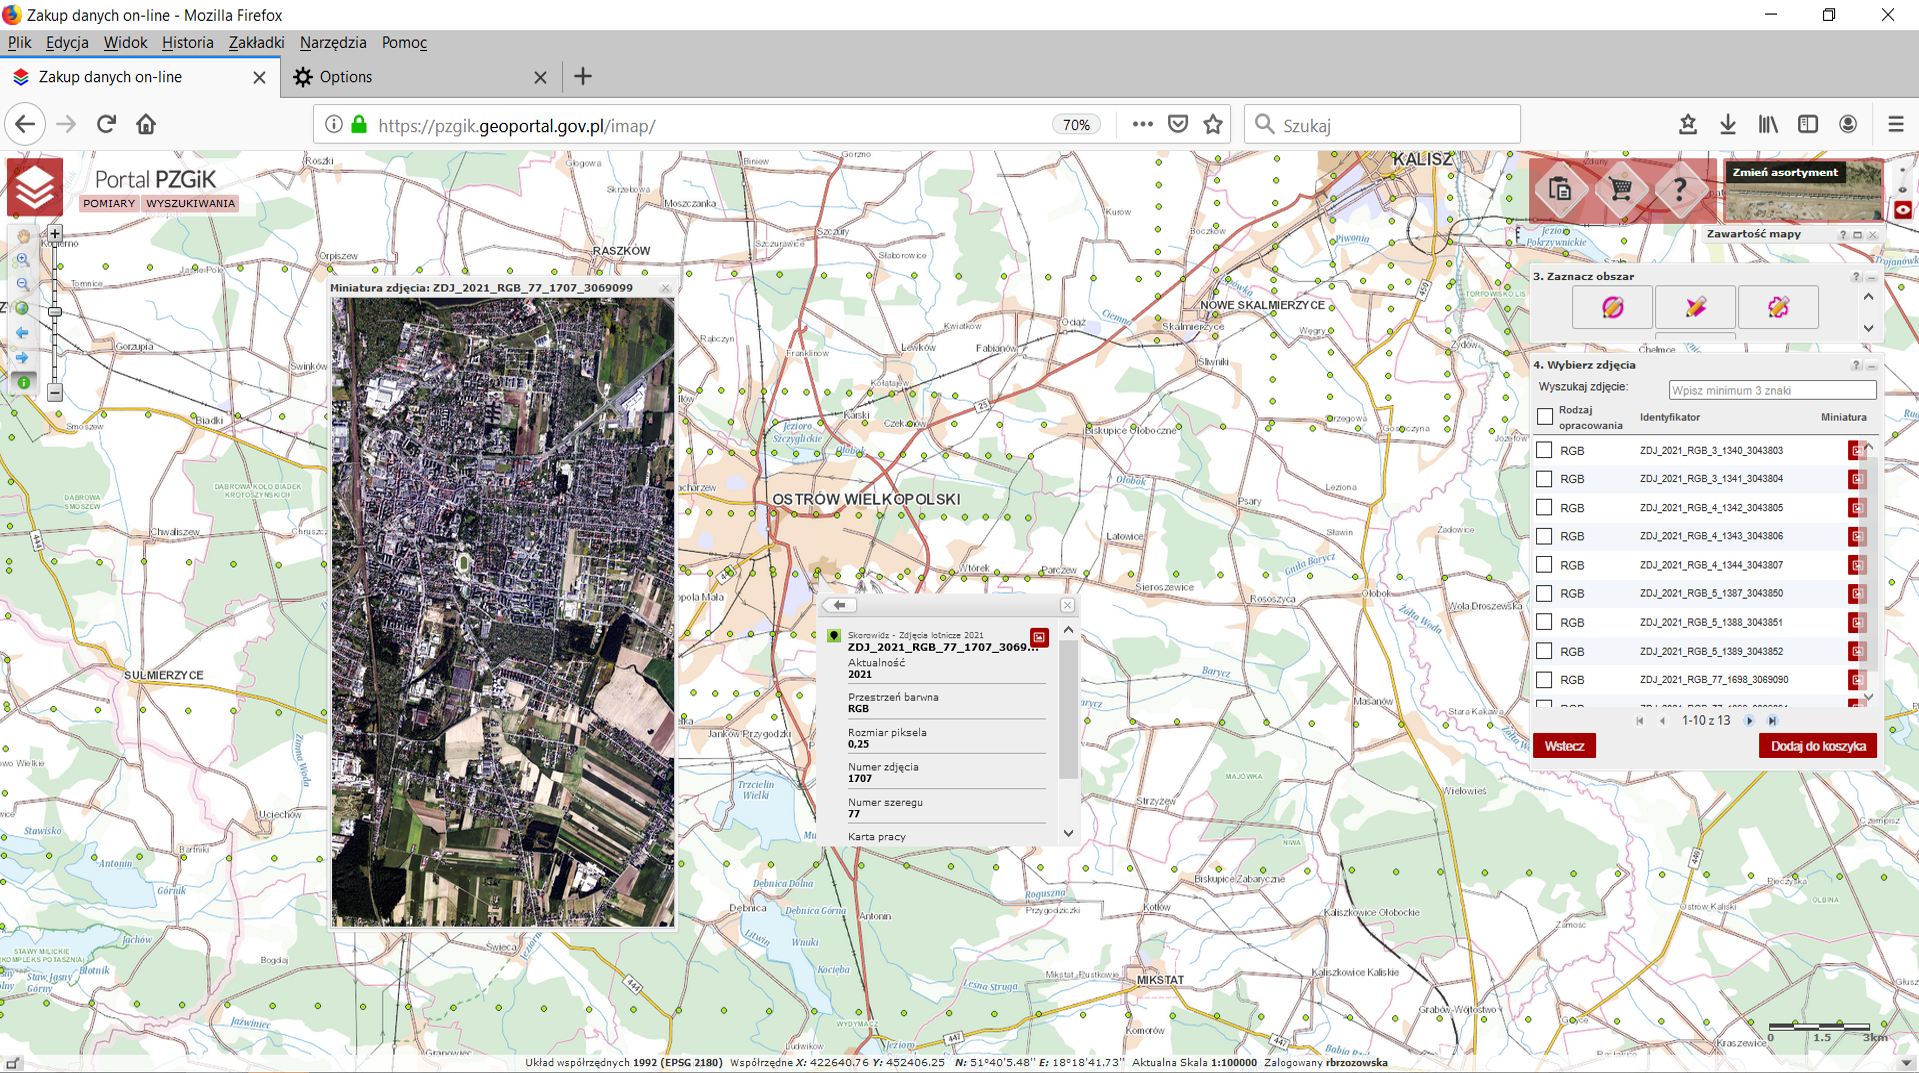 Ilustracja przedstawia zrzut ekranu z portalu https://pzgik.geoportal.gov.pl/imap/ nowo przyjętych zdjęć do Państwowego Zasobu Geodezyjnego i Kartograficznego na przykładzie miasta Ostrów Wielkopolski